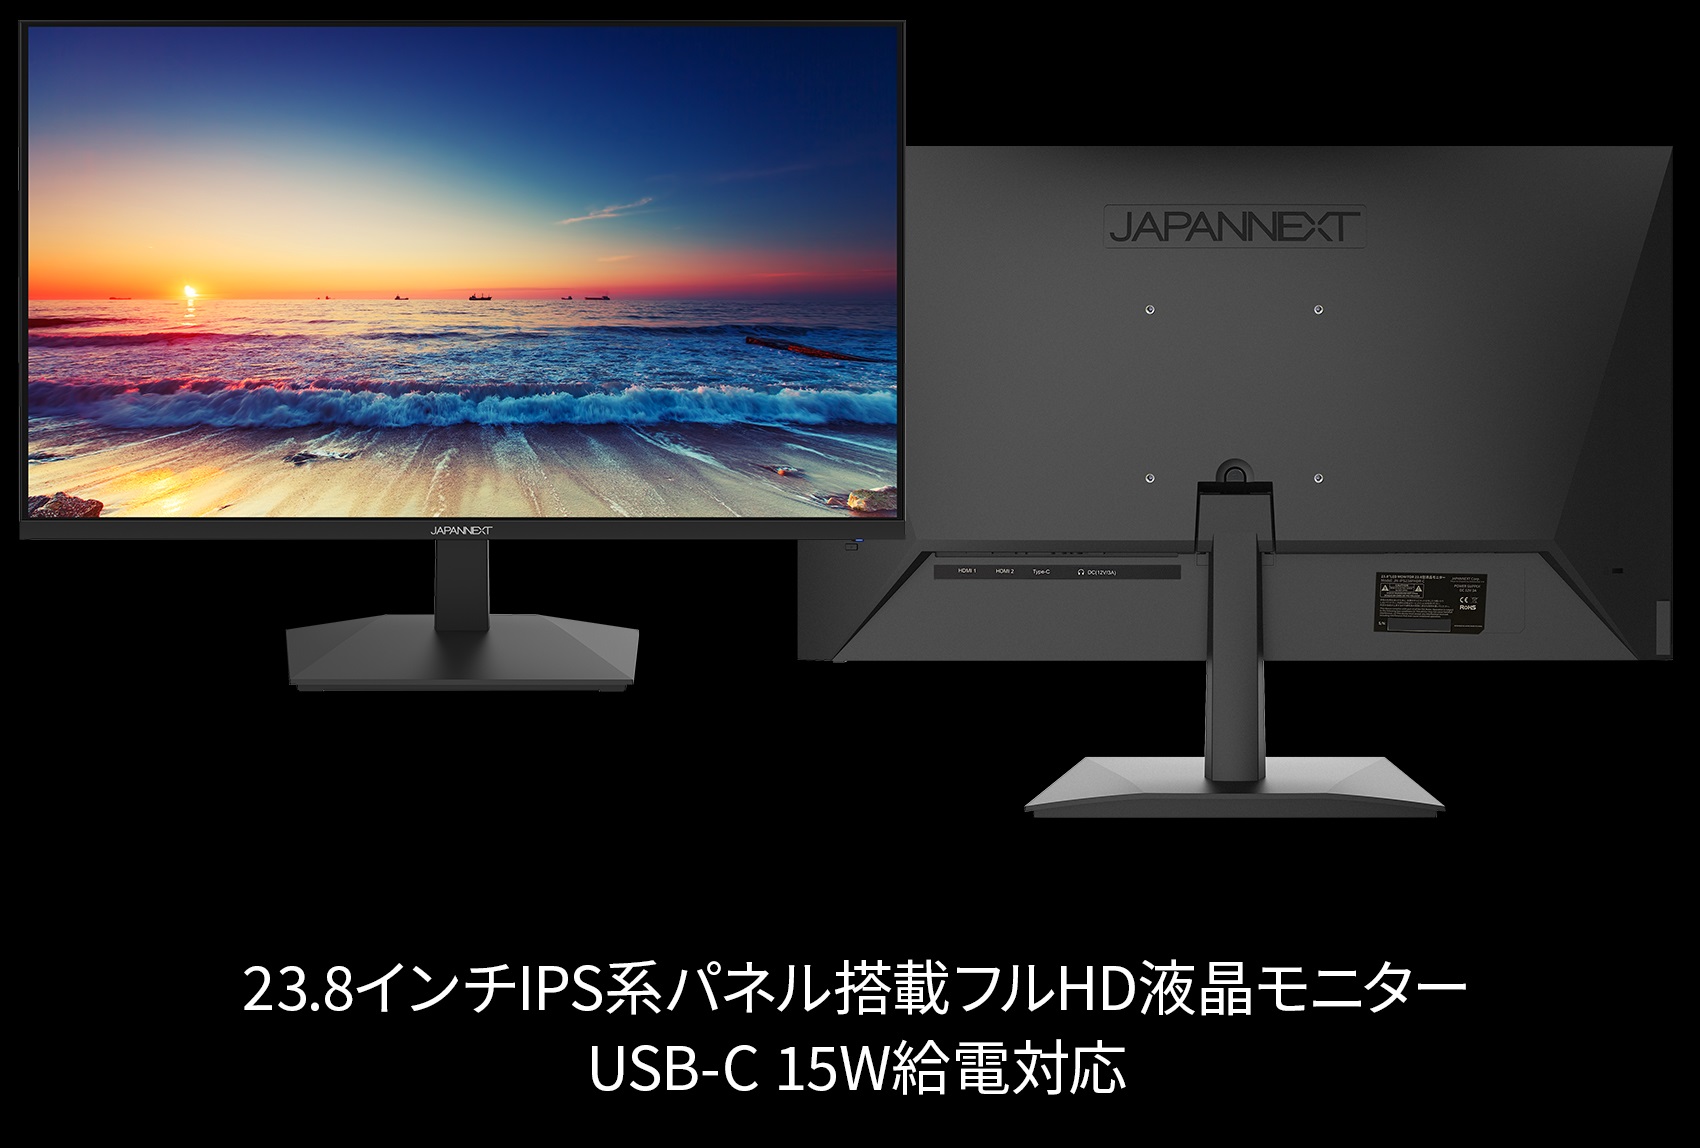 JAPANNEXT 23.8インチ IPS フルHD(1920x1080)ゲーミングモニター JN